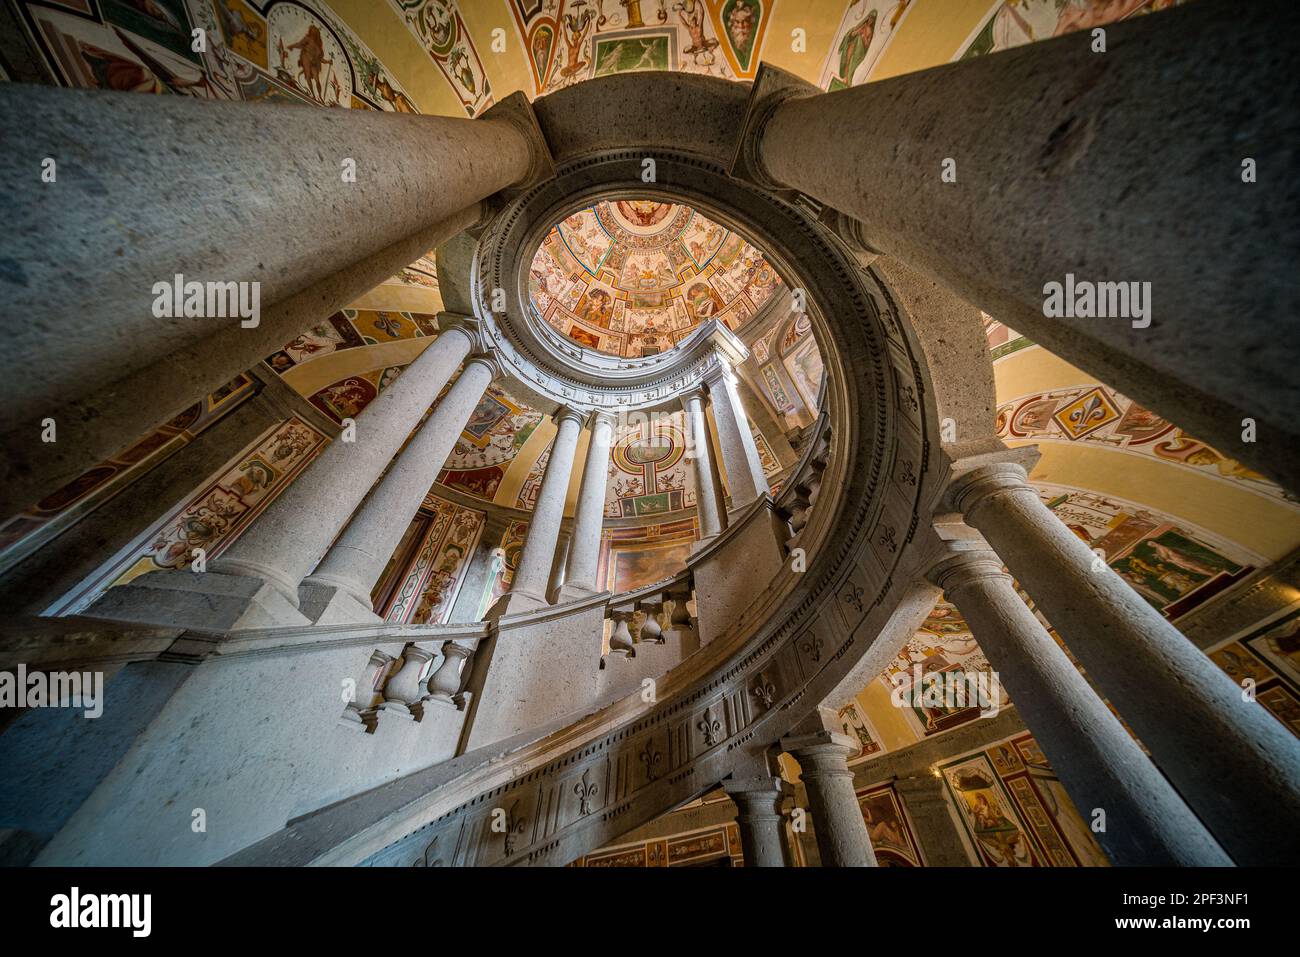 Magnifique escalier décoré de fresques dans le palais Farnese à Caprarola, province de Viterbo, Latium, Italie. Mars 02-2020 Banque D'Images